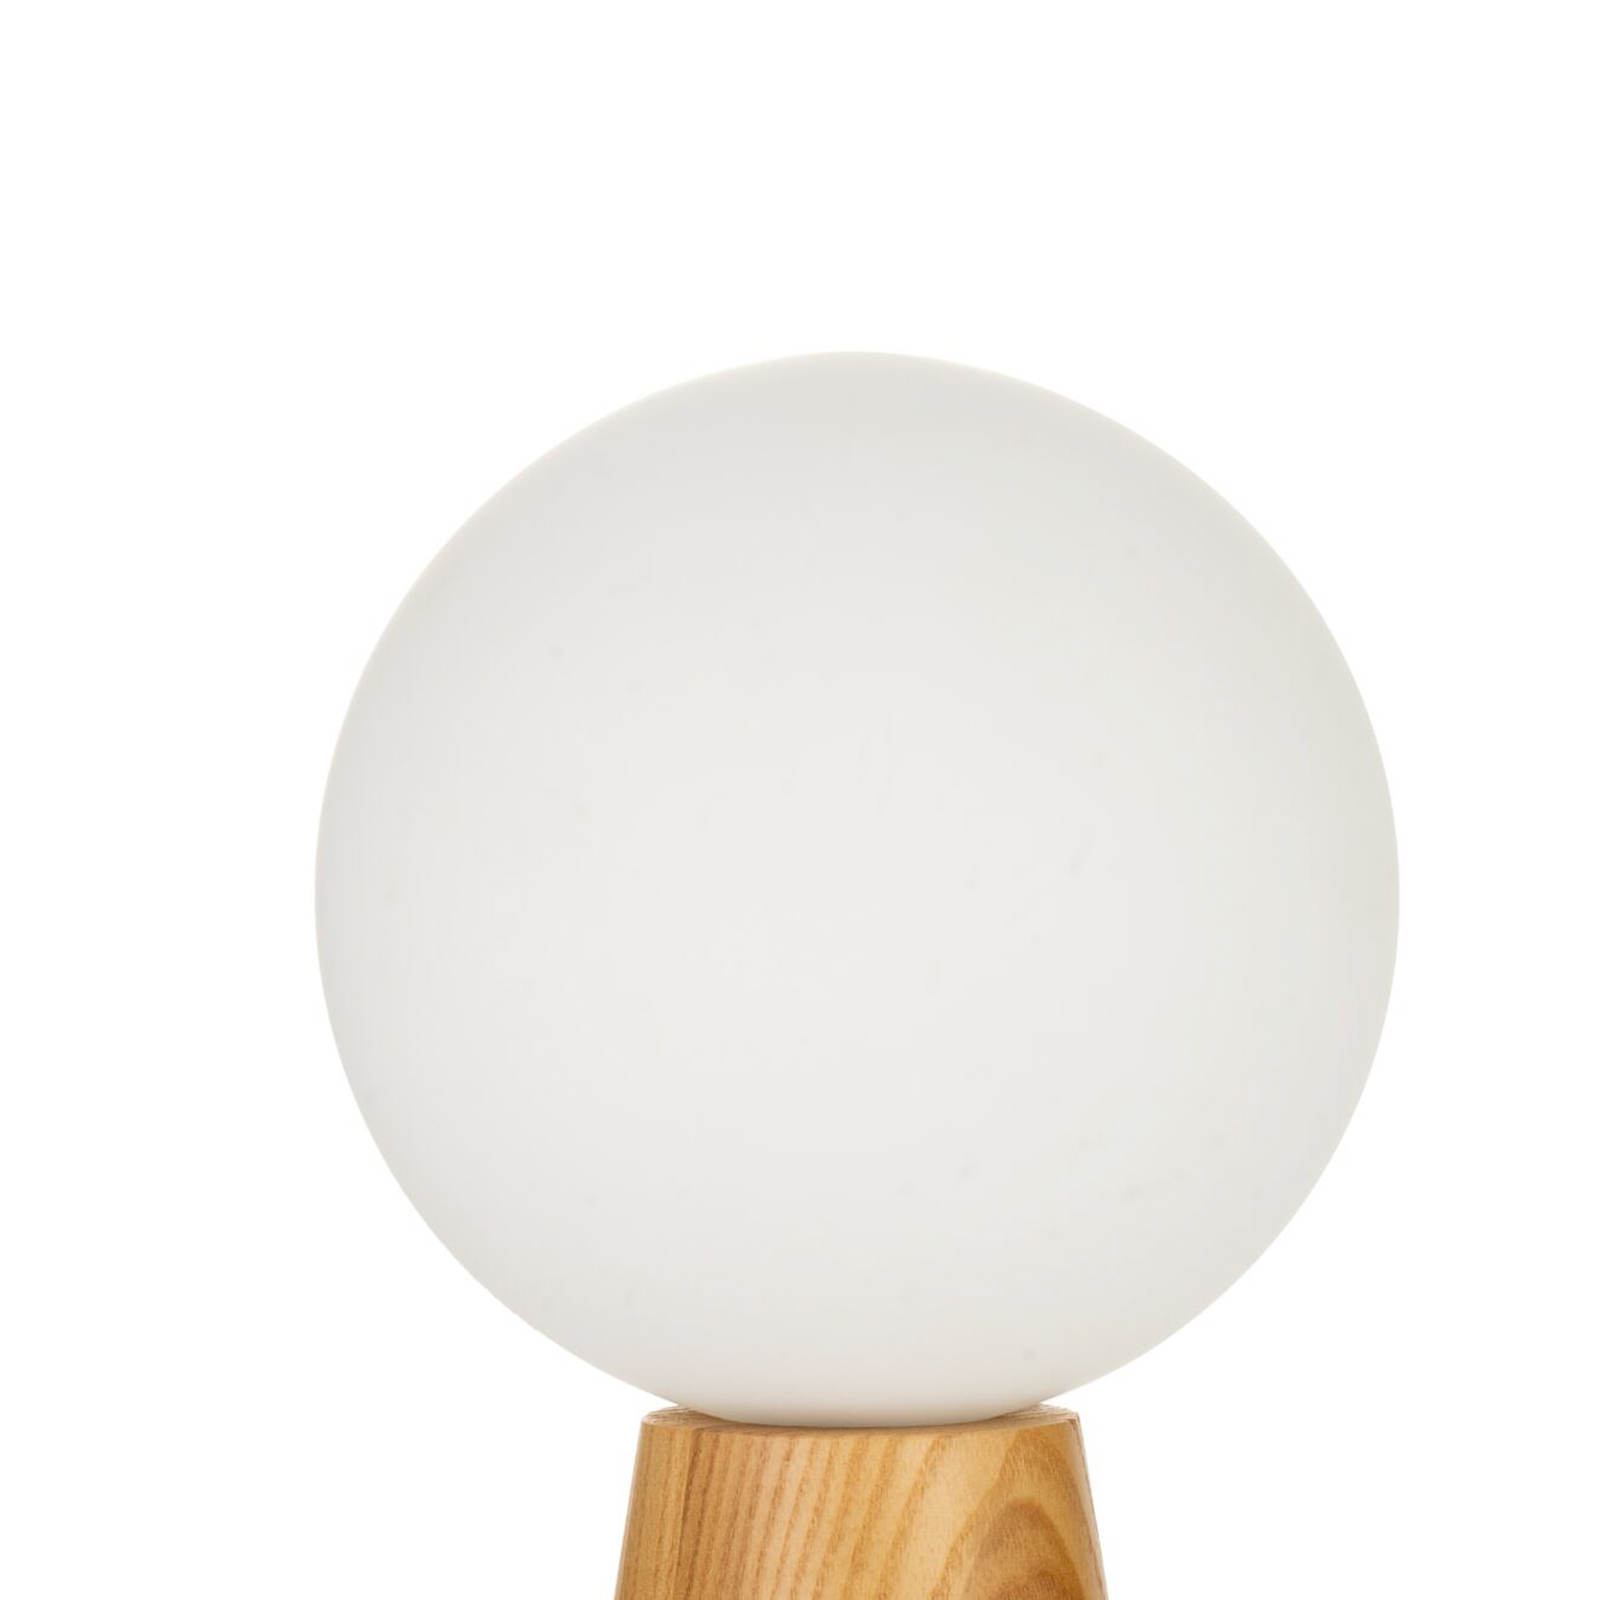 Pauleen Woody Soul tafellamp, houten voet, glasbol